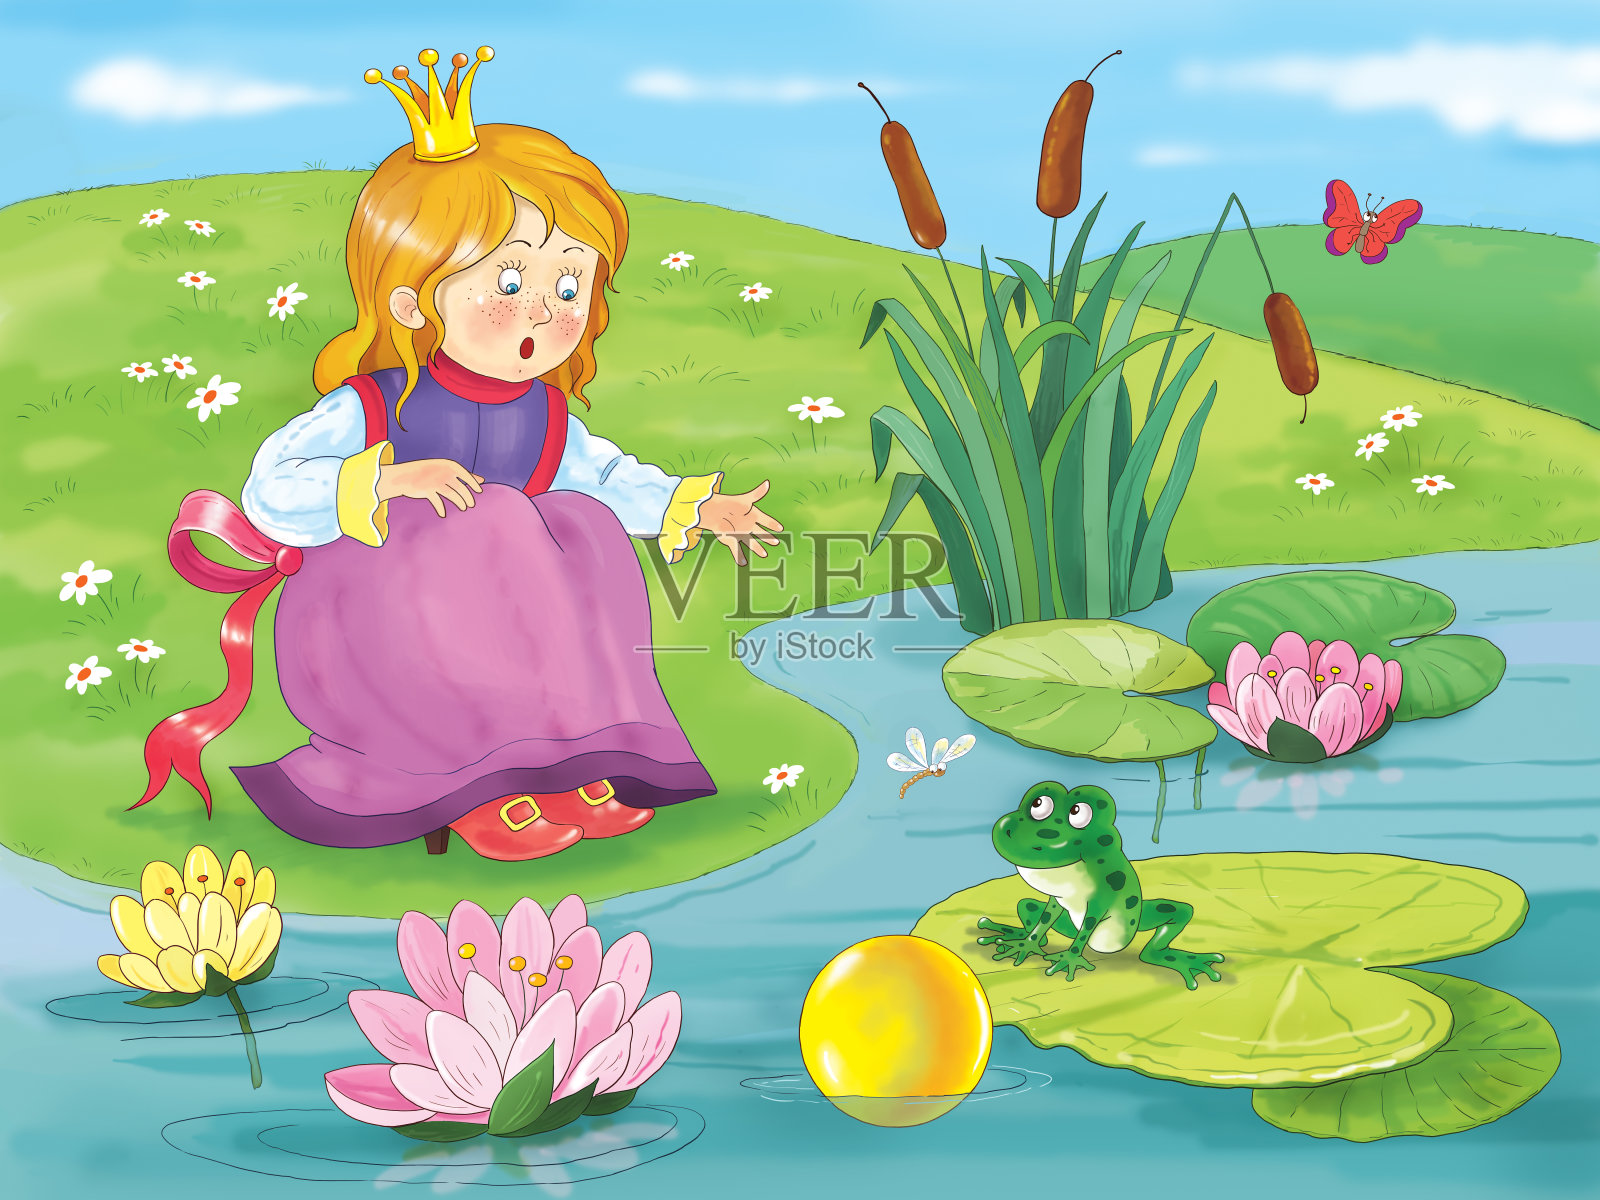 青蛙王子。童话故事。对儿童插图。着色页面。可爱和有趣的卡通人物插画图片素材